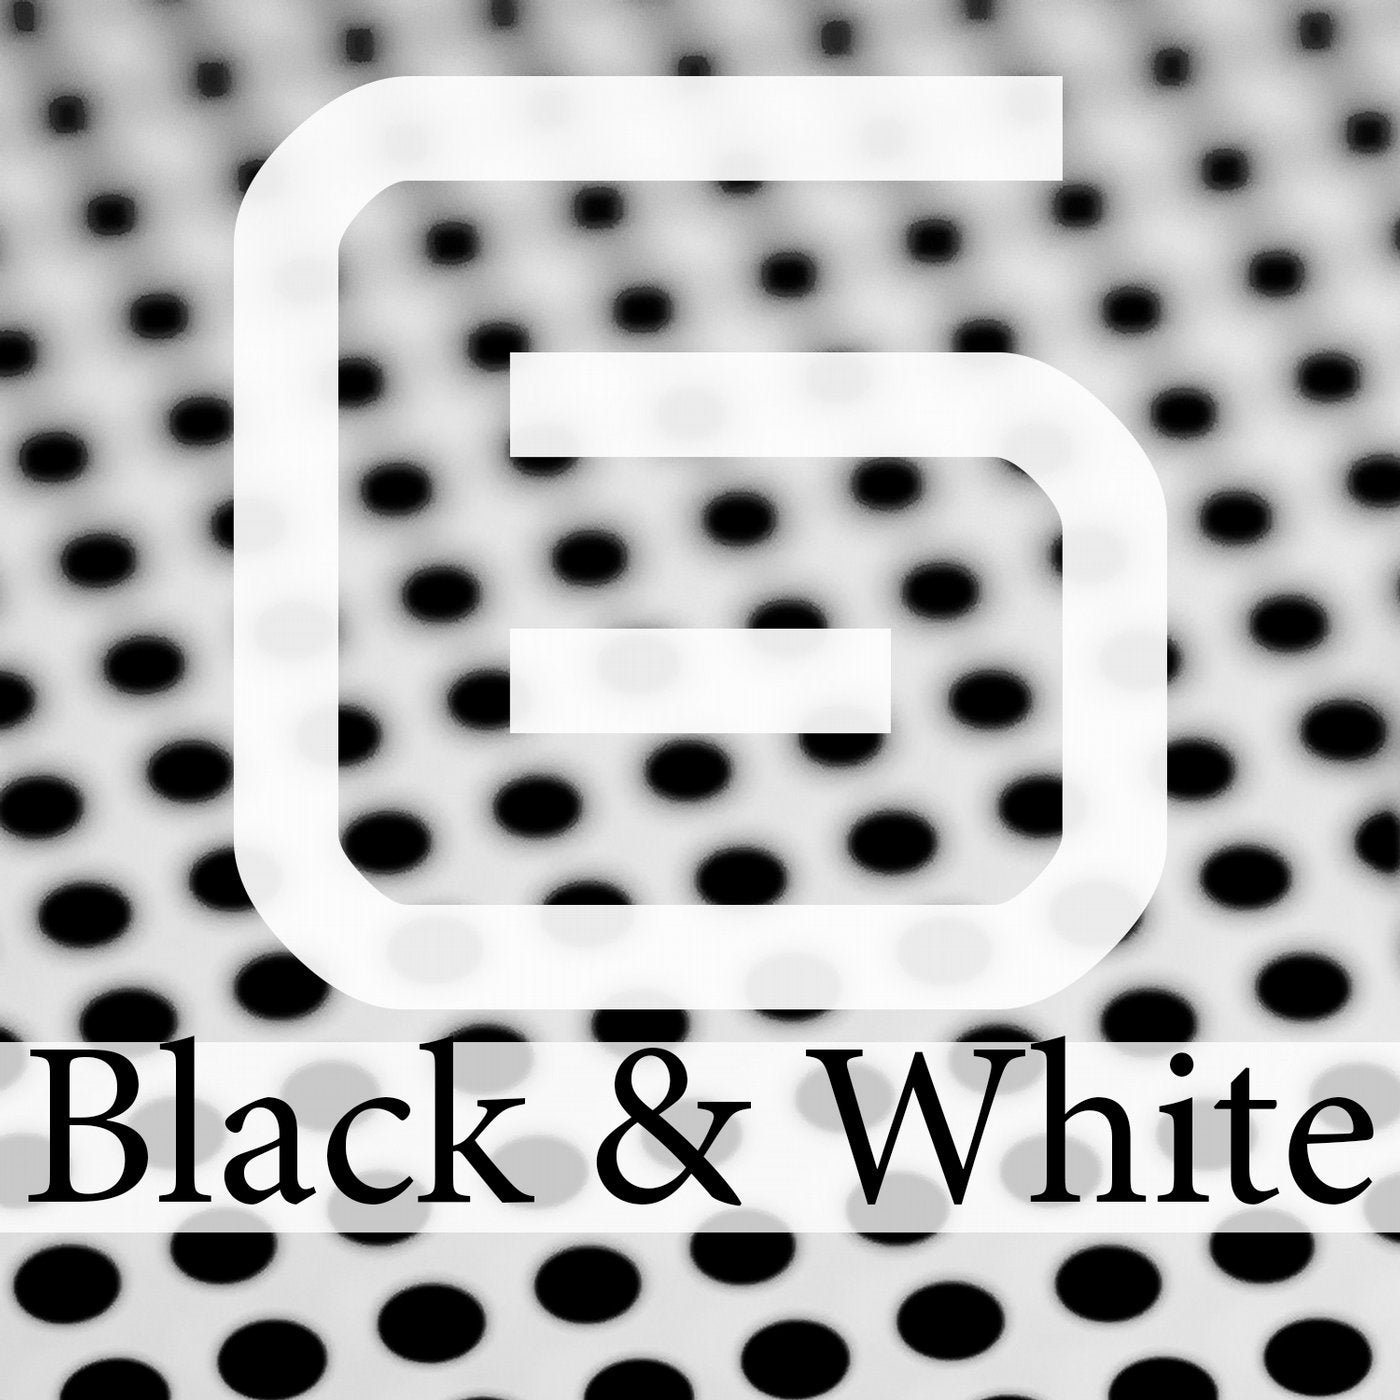 Black & White, Vol. 6